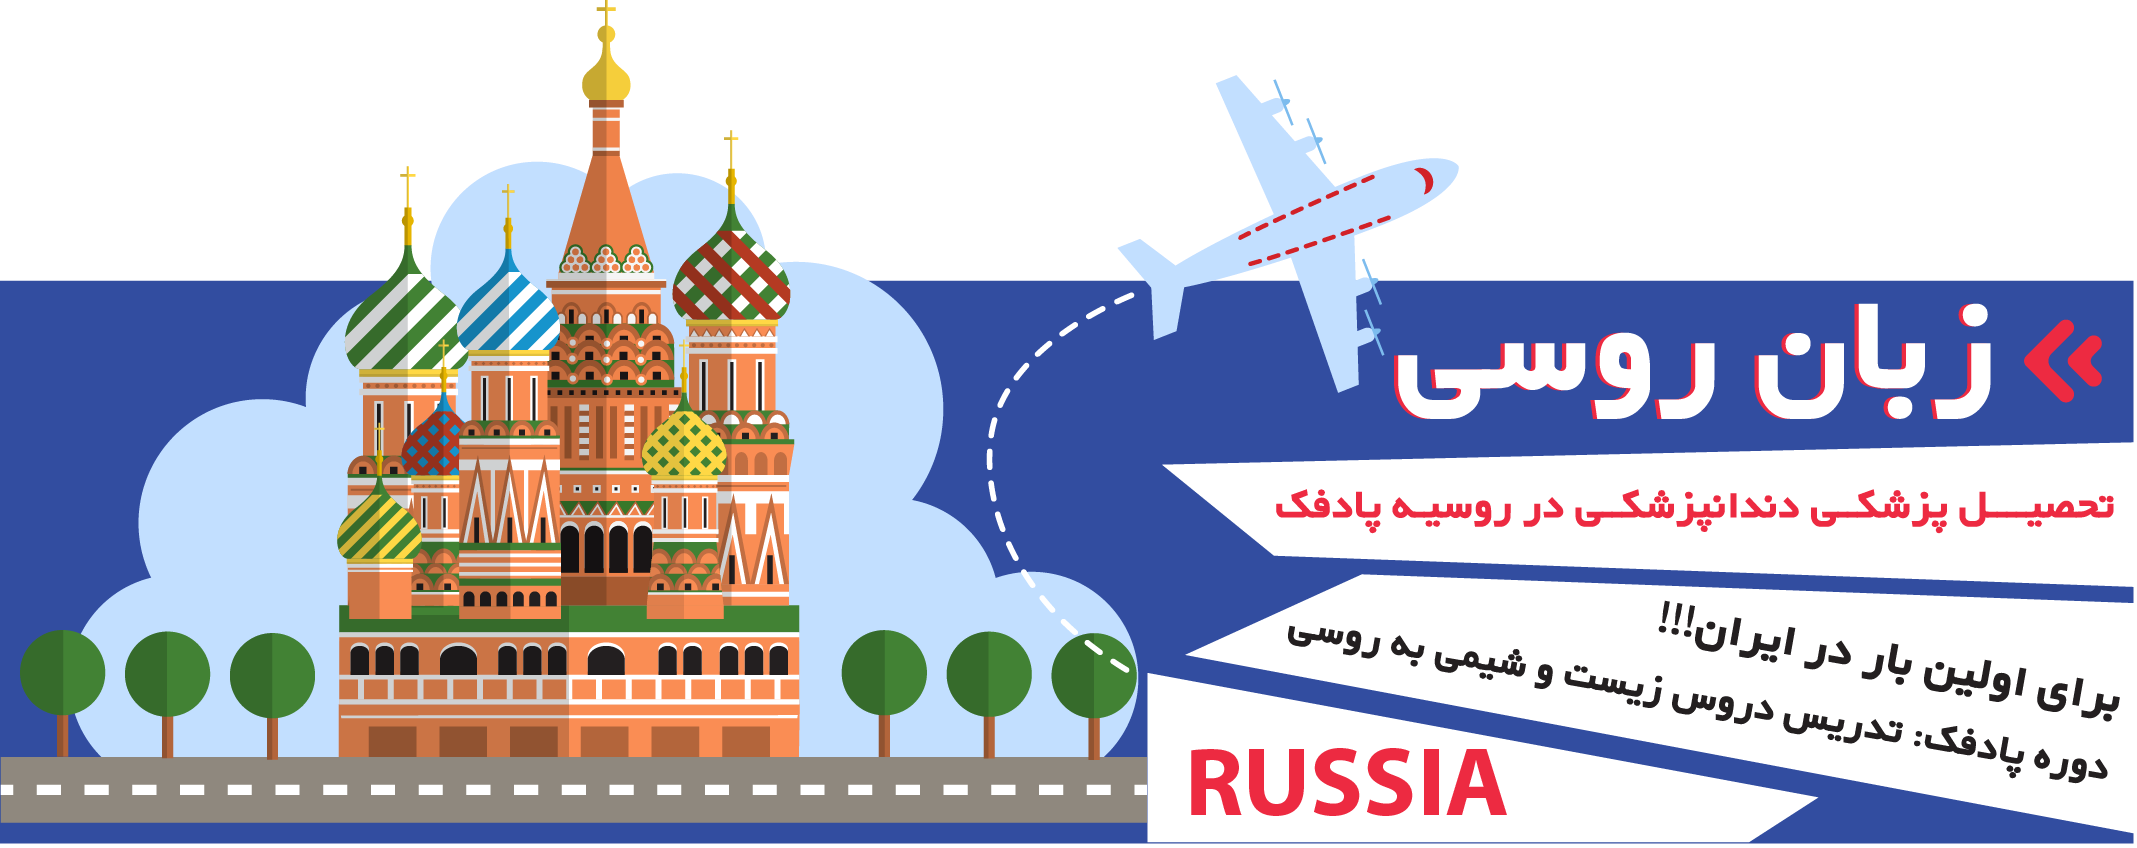 آموزشگاه زبان روسی تهران